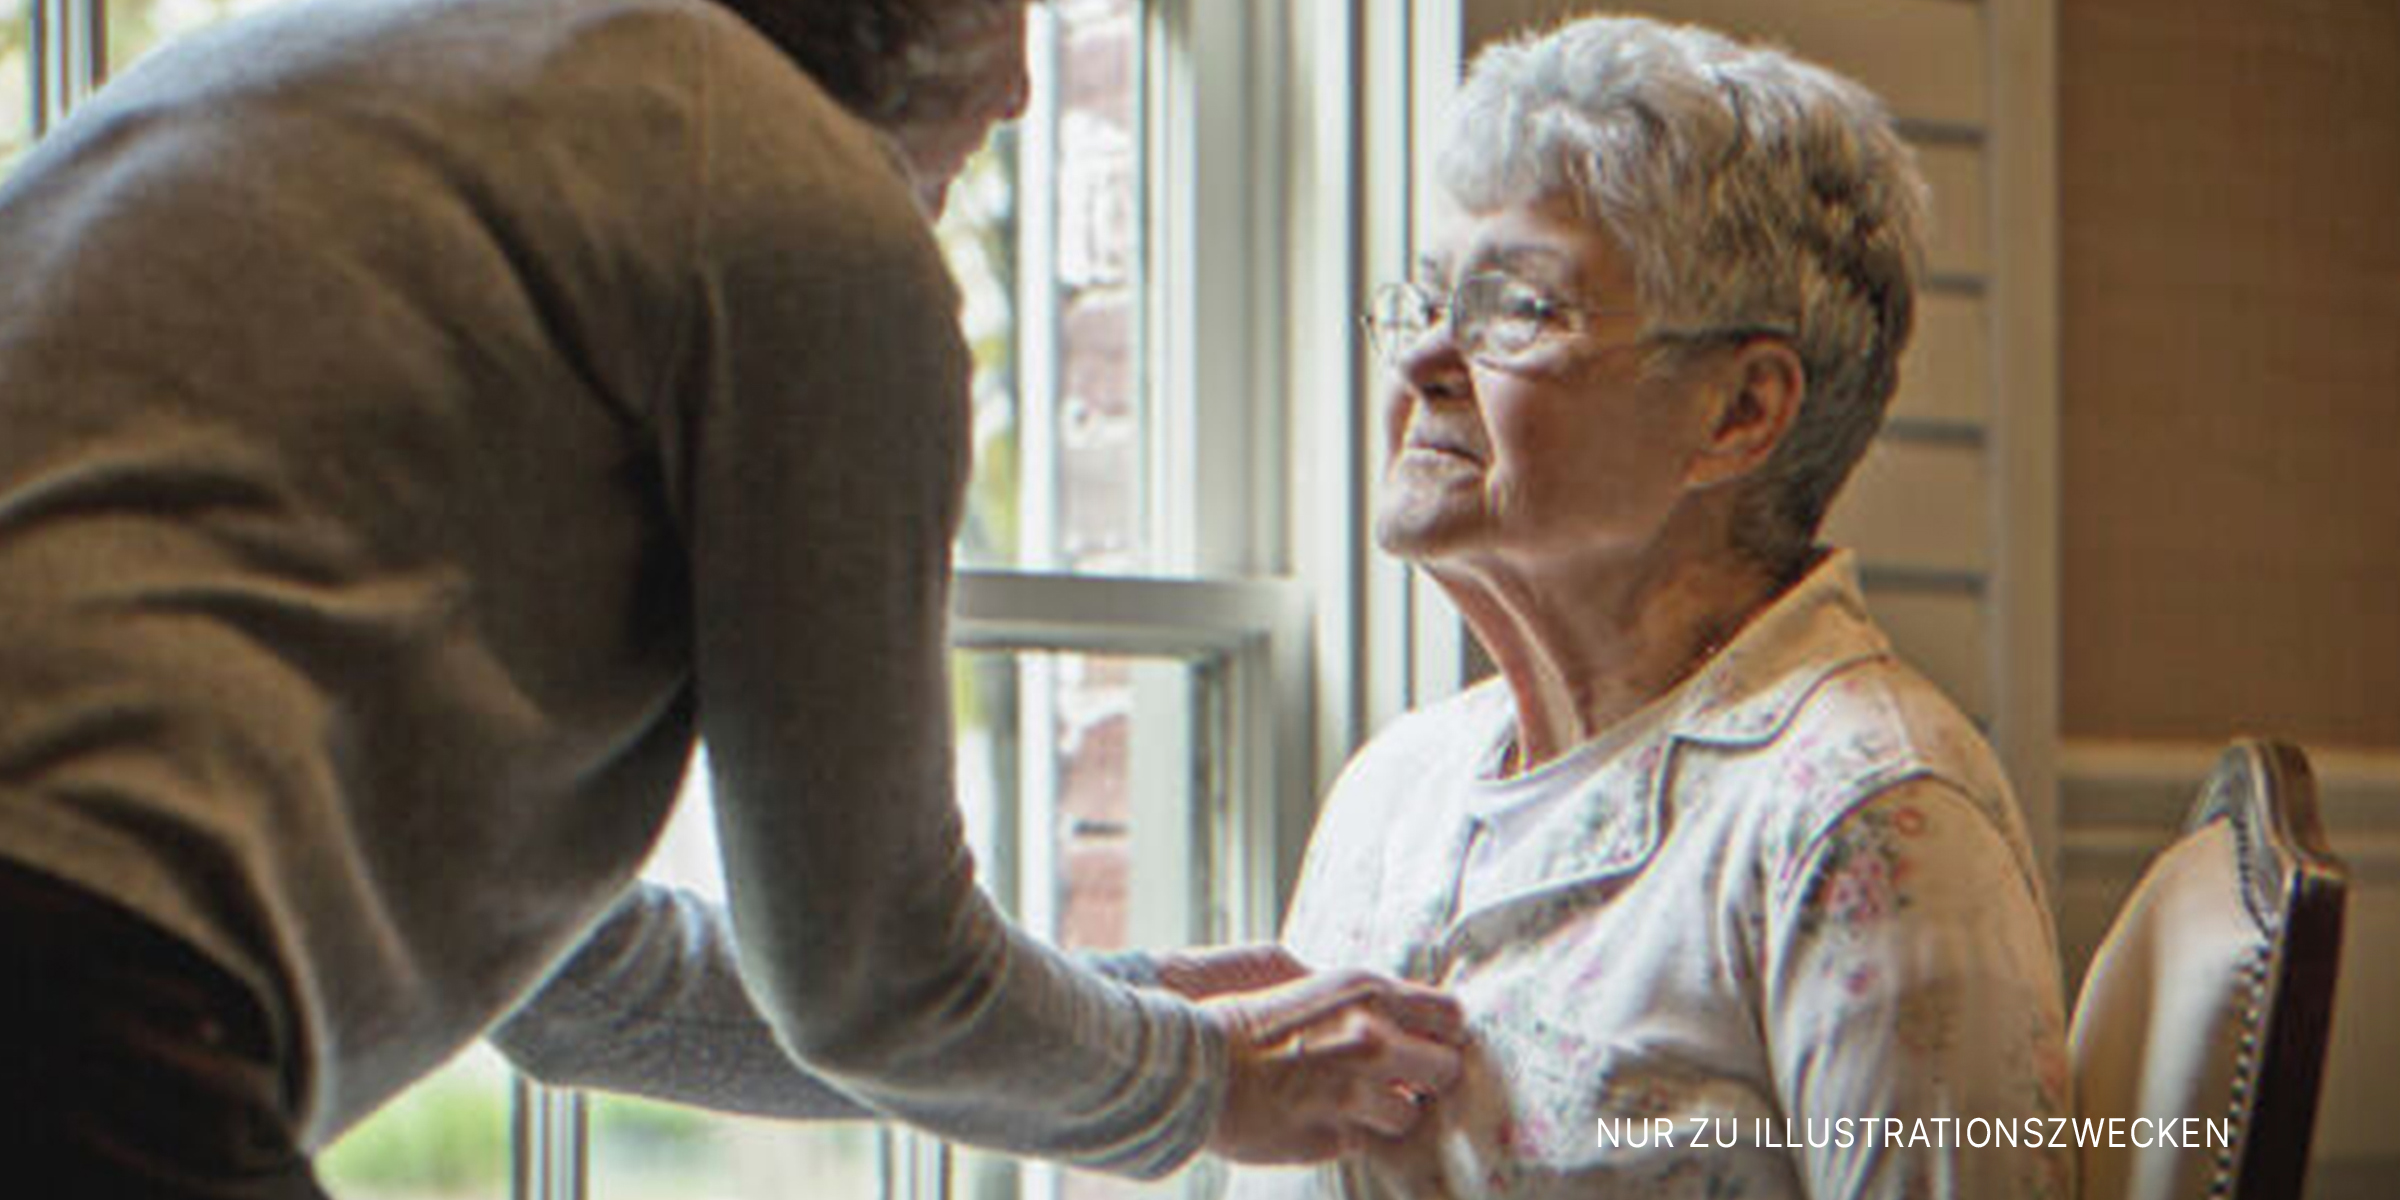 Alte Frau sitzt, während eine junge Frau ihr hilft. | Quelle: Getty Images